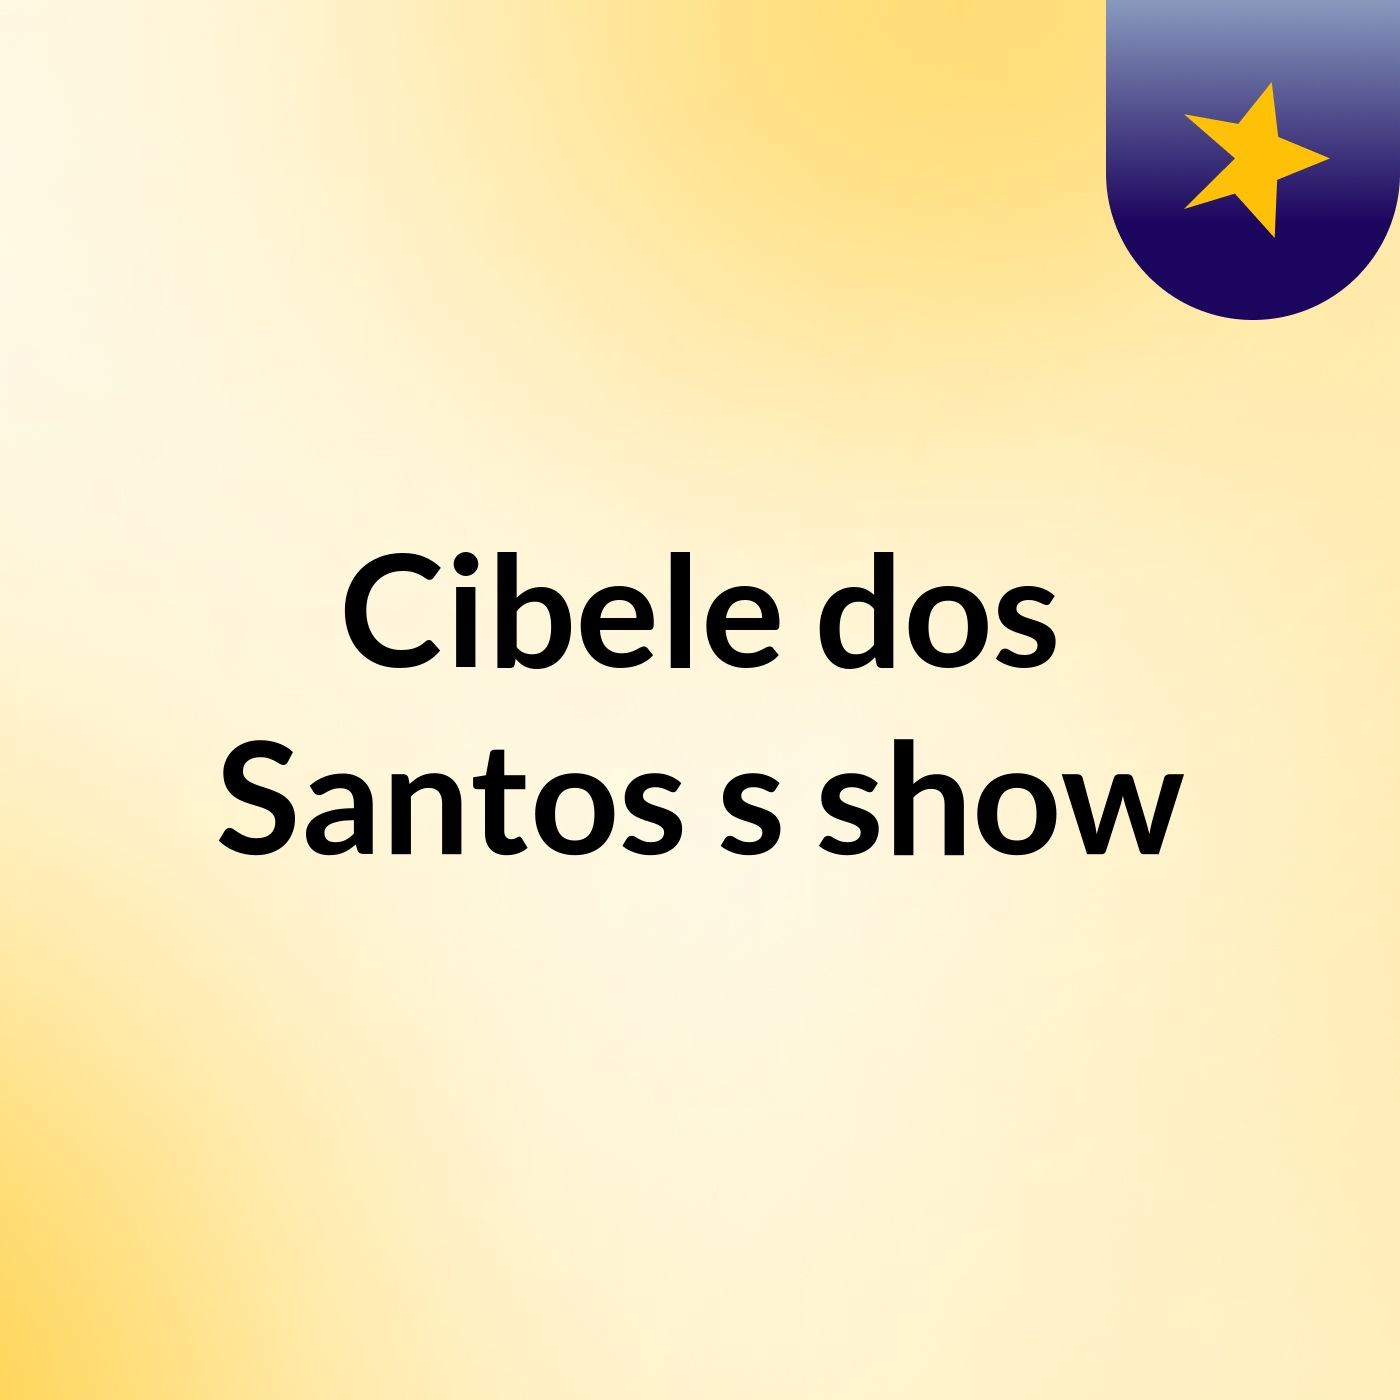 Cibele dos Santos's show